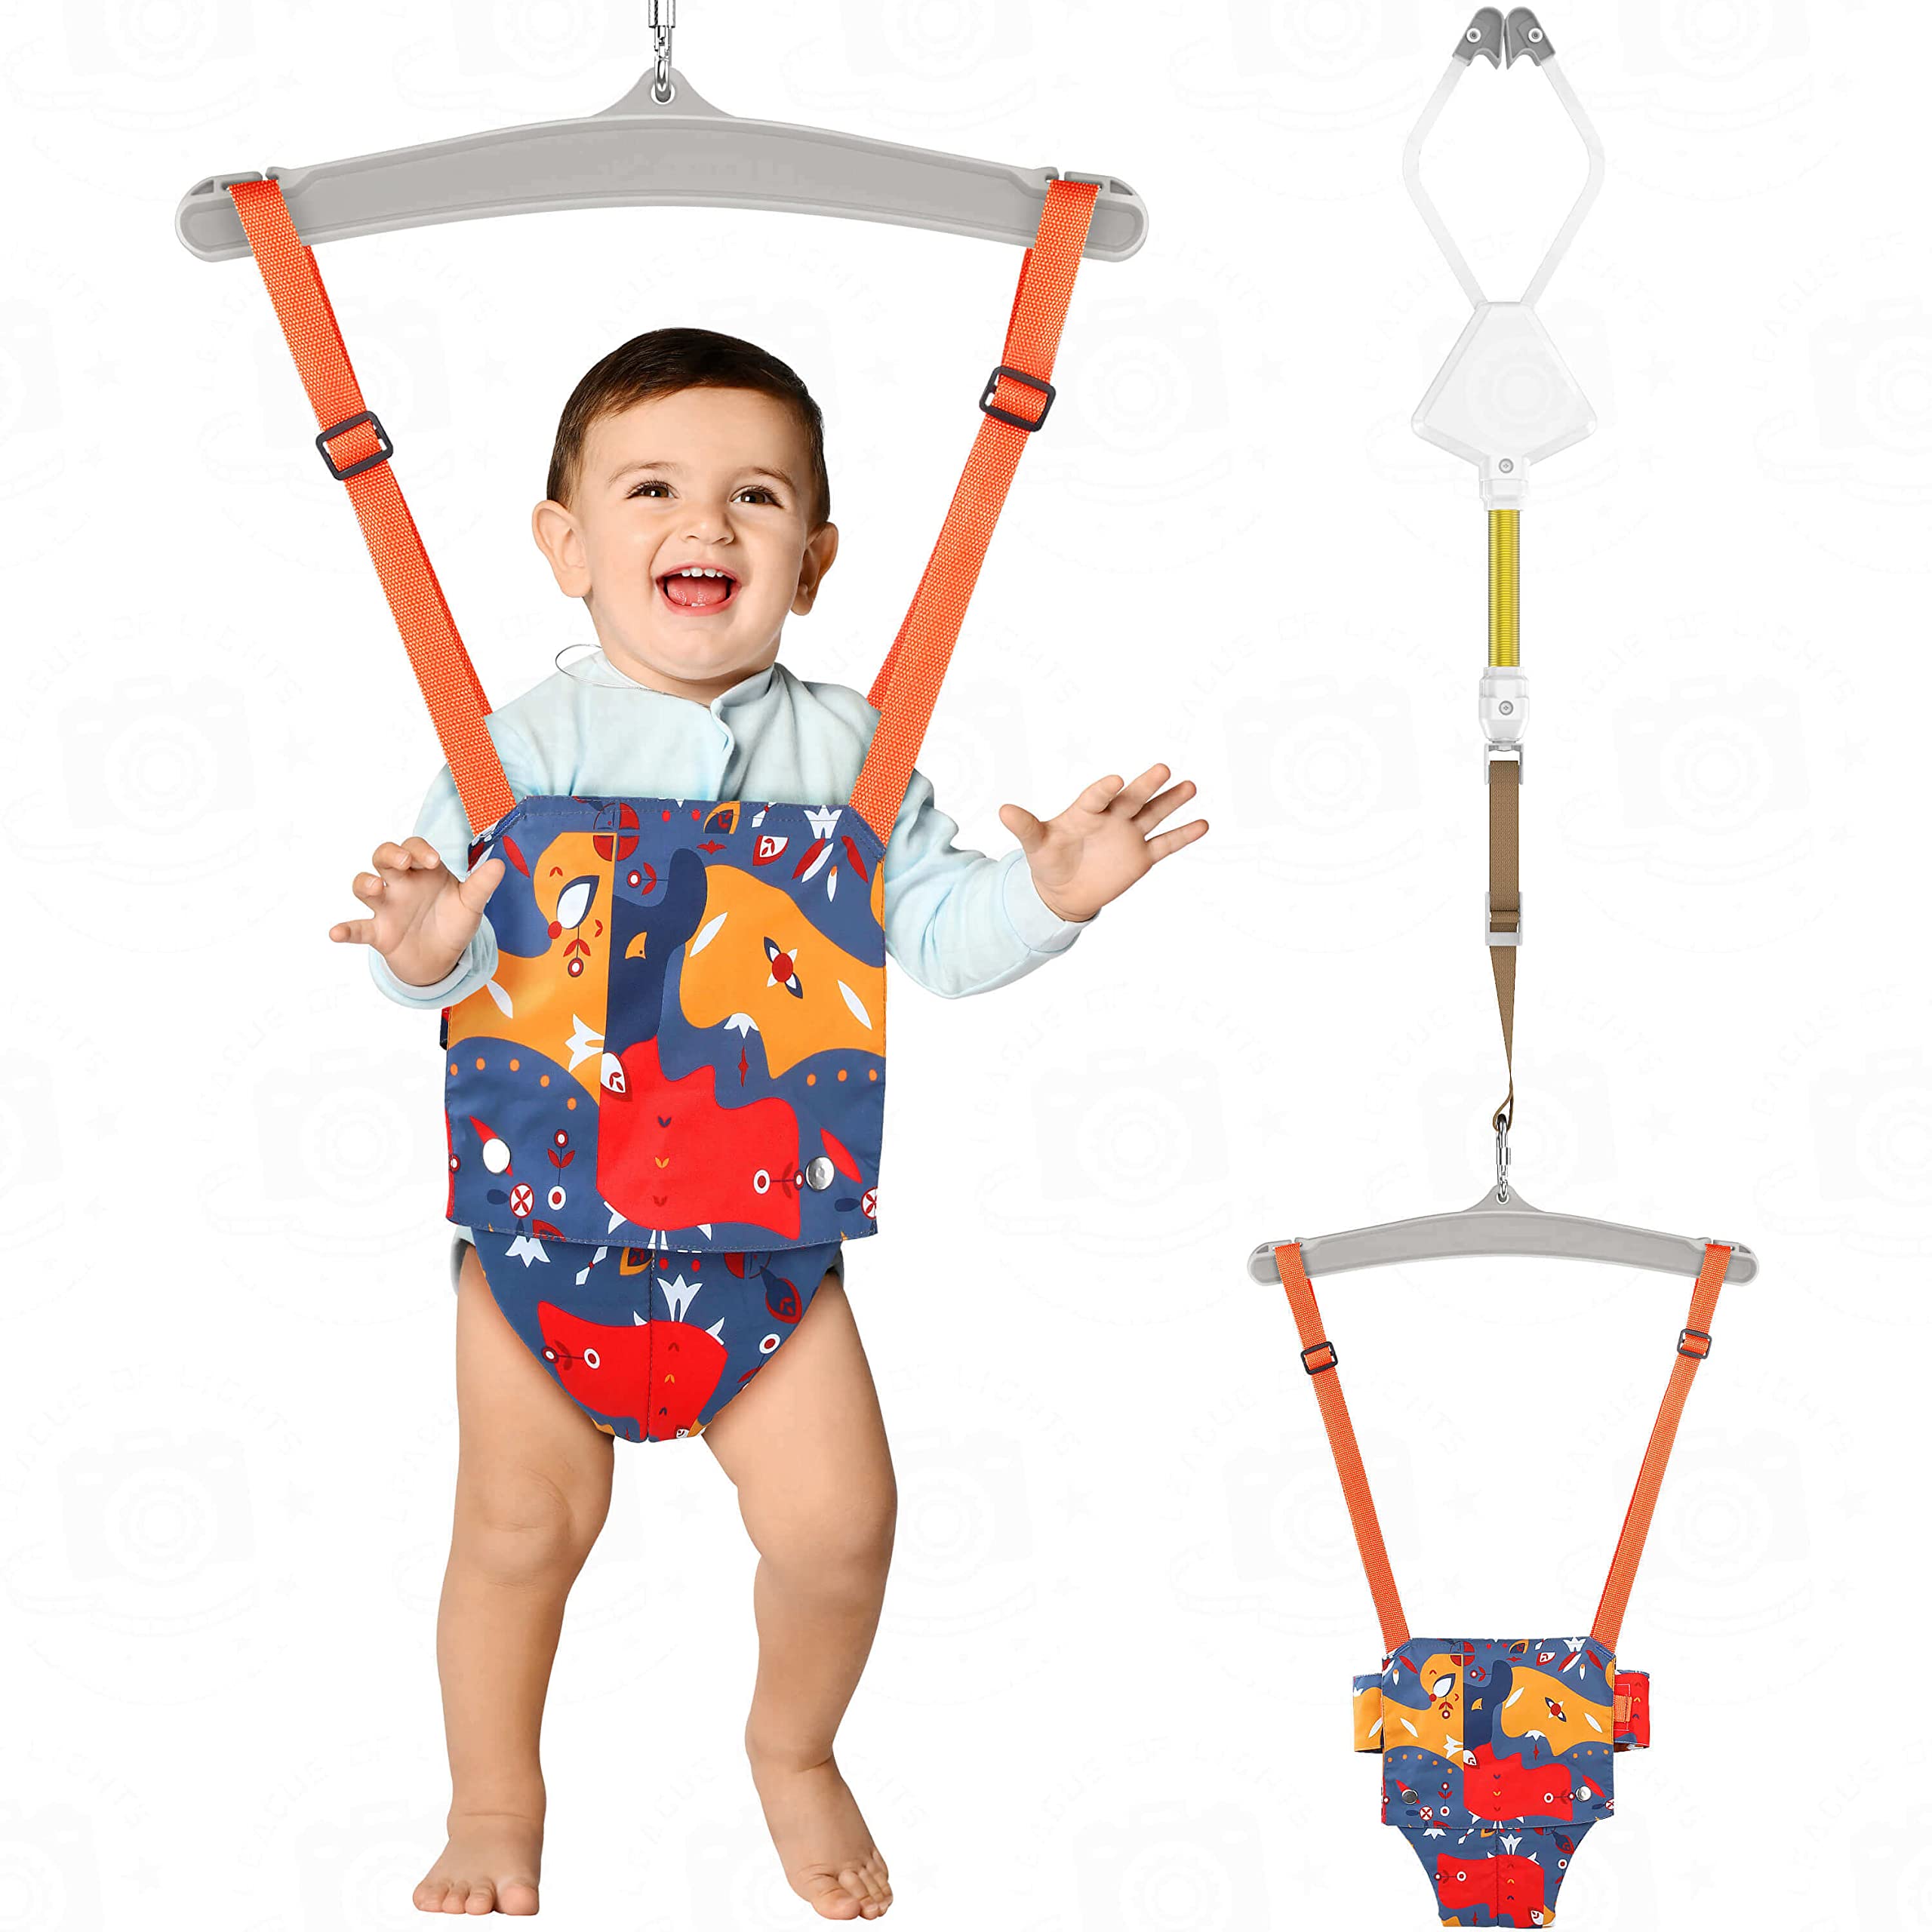 Как правильно использовать прыгунки для малыша: Секреты комфорта и безопасности